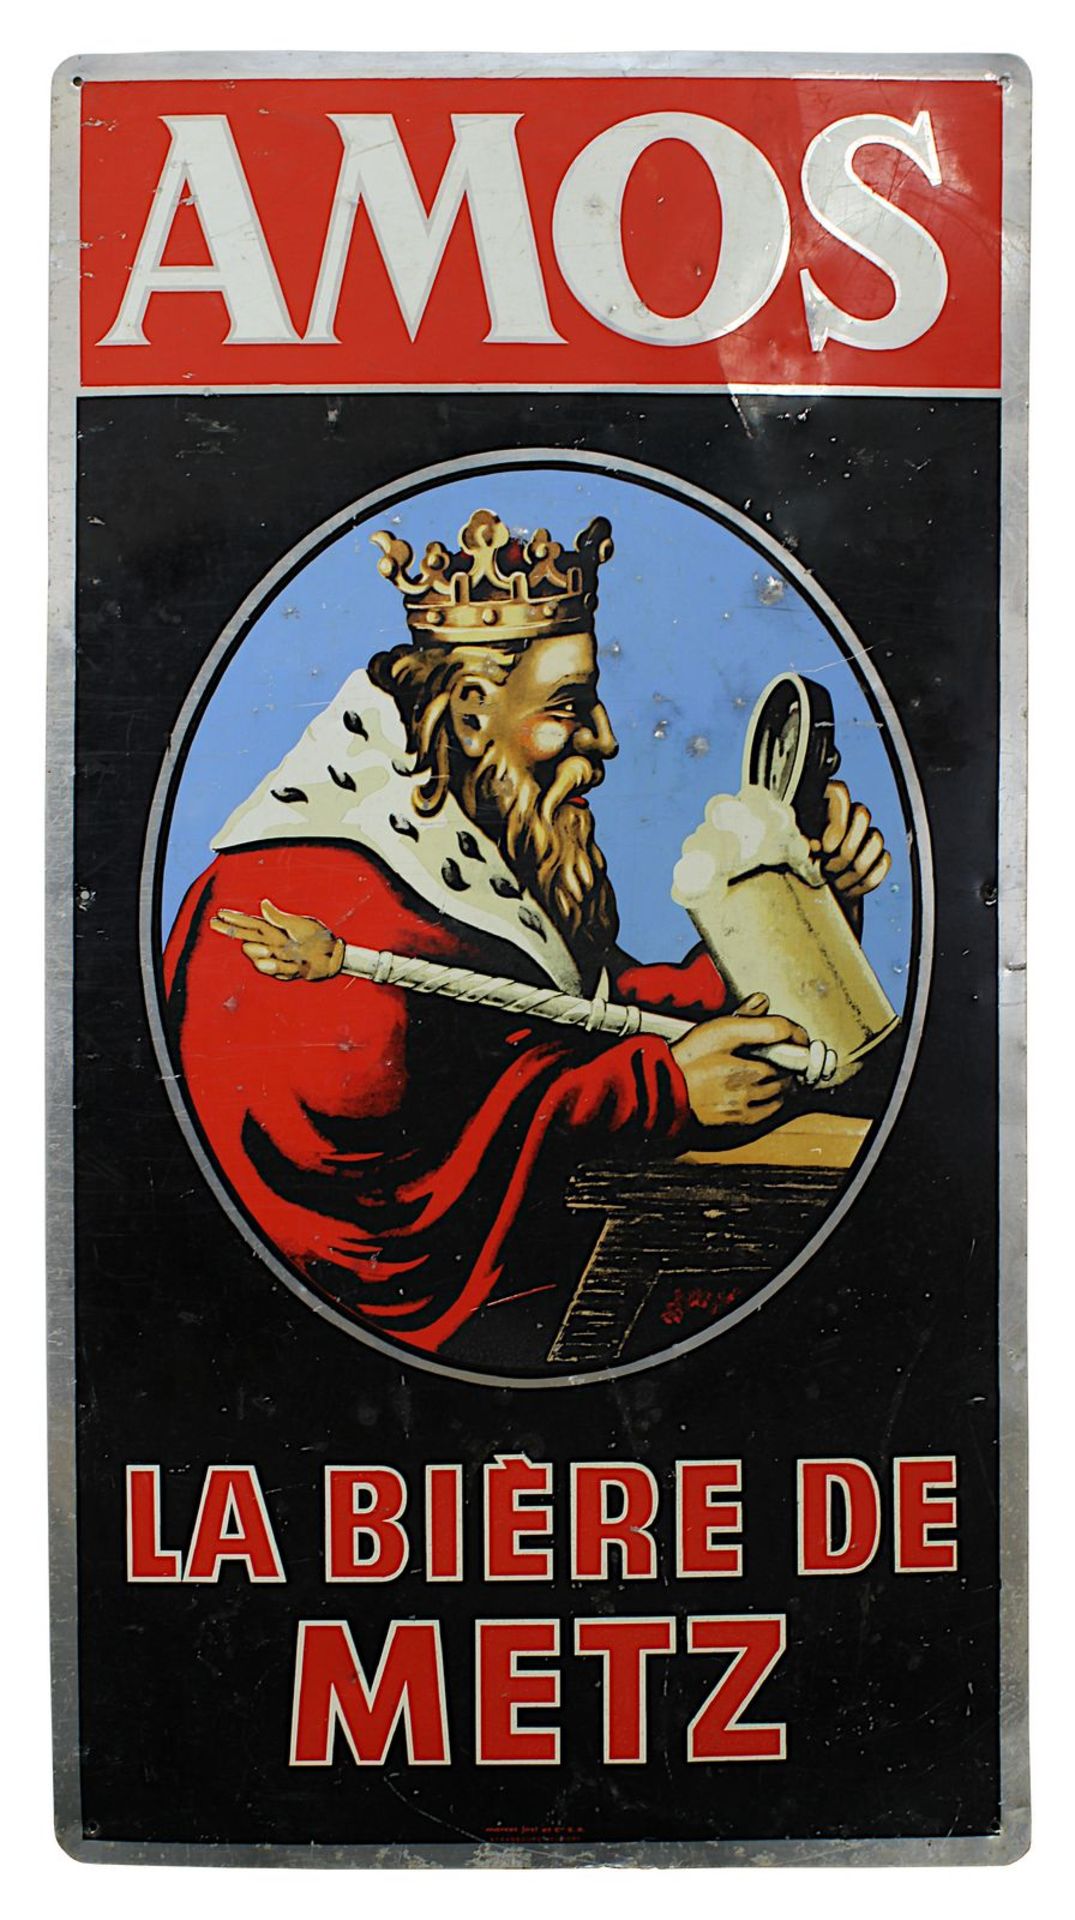 Emaille Schild "Amos", Frankreich Mitte 20. Jh., Reklameschild der Brasserie Amos, darauf